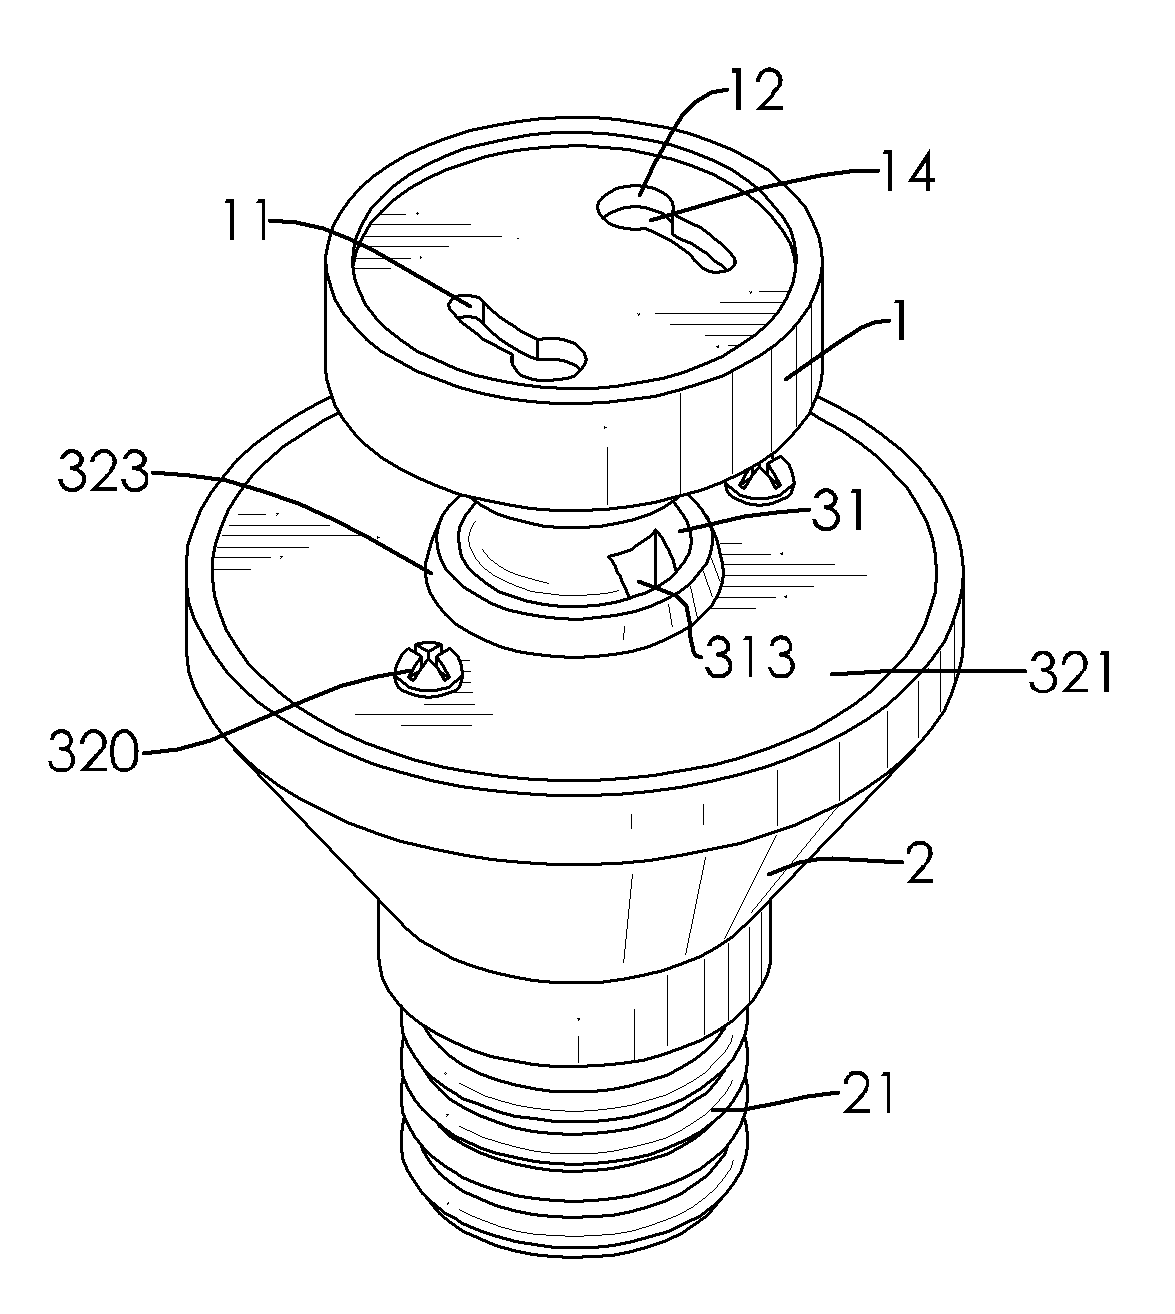 Light bulb socket adapter